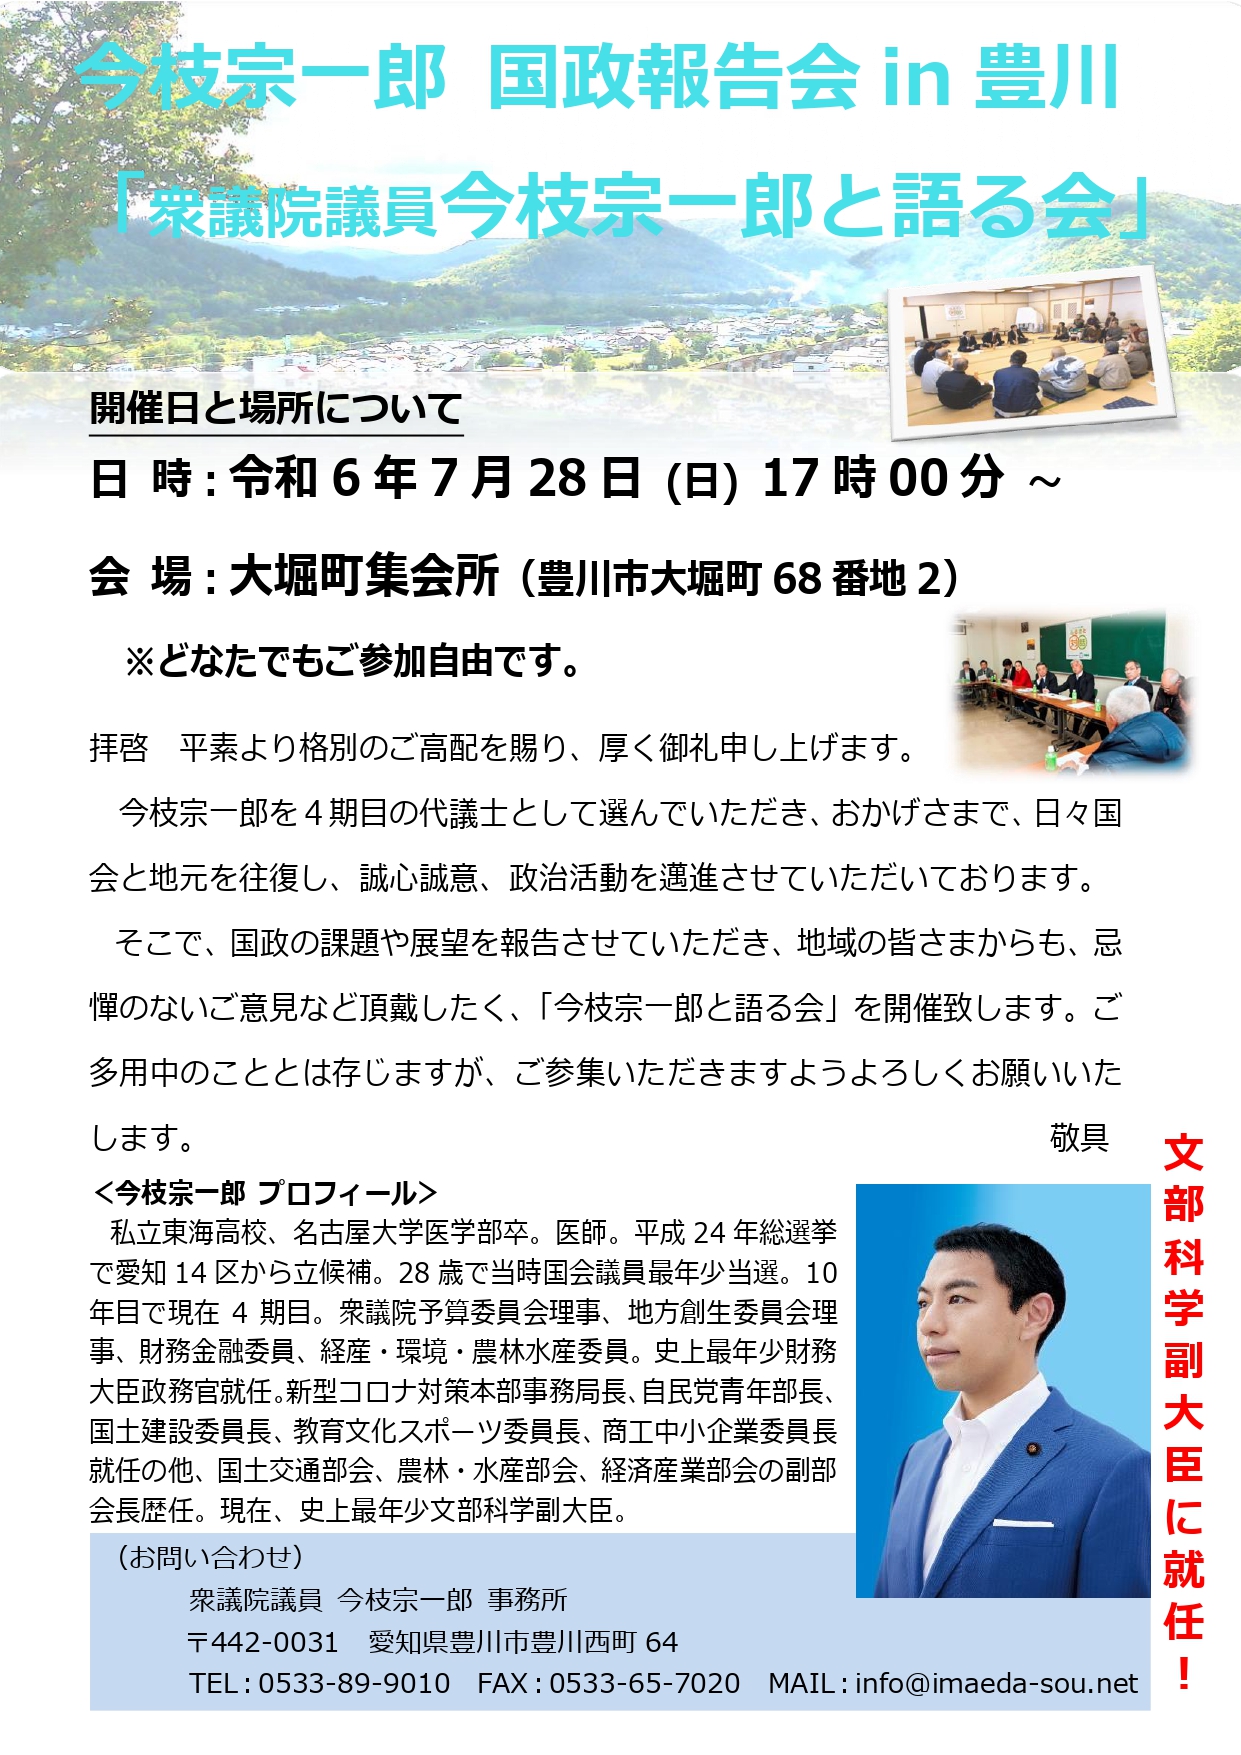 7/28(日)、国政報告会 in 豊川が開催決定！